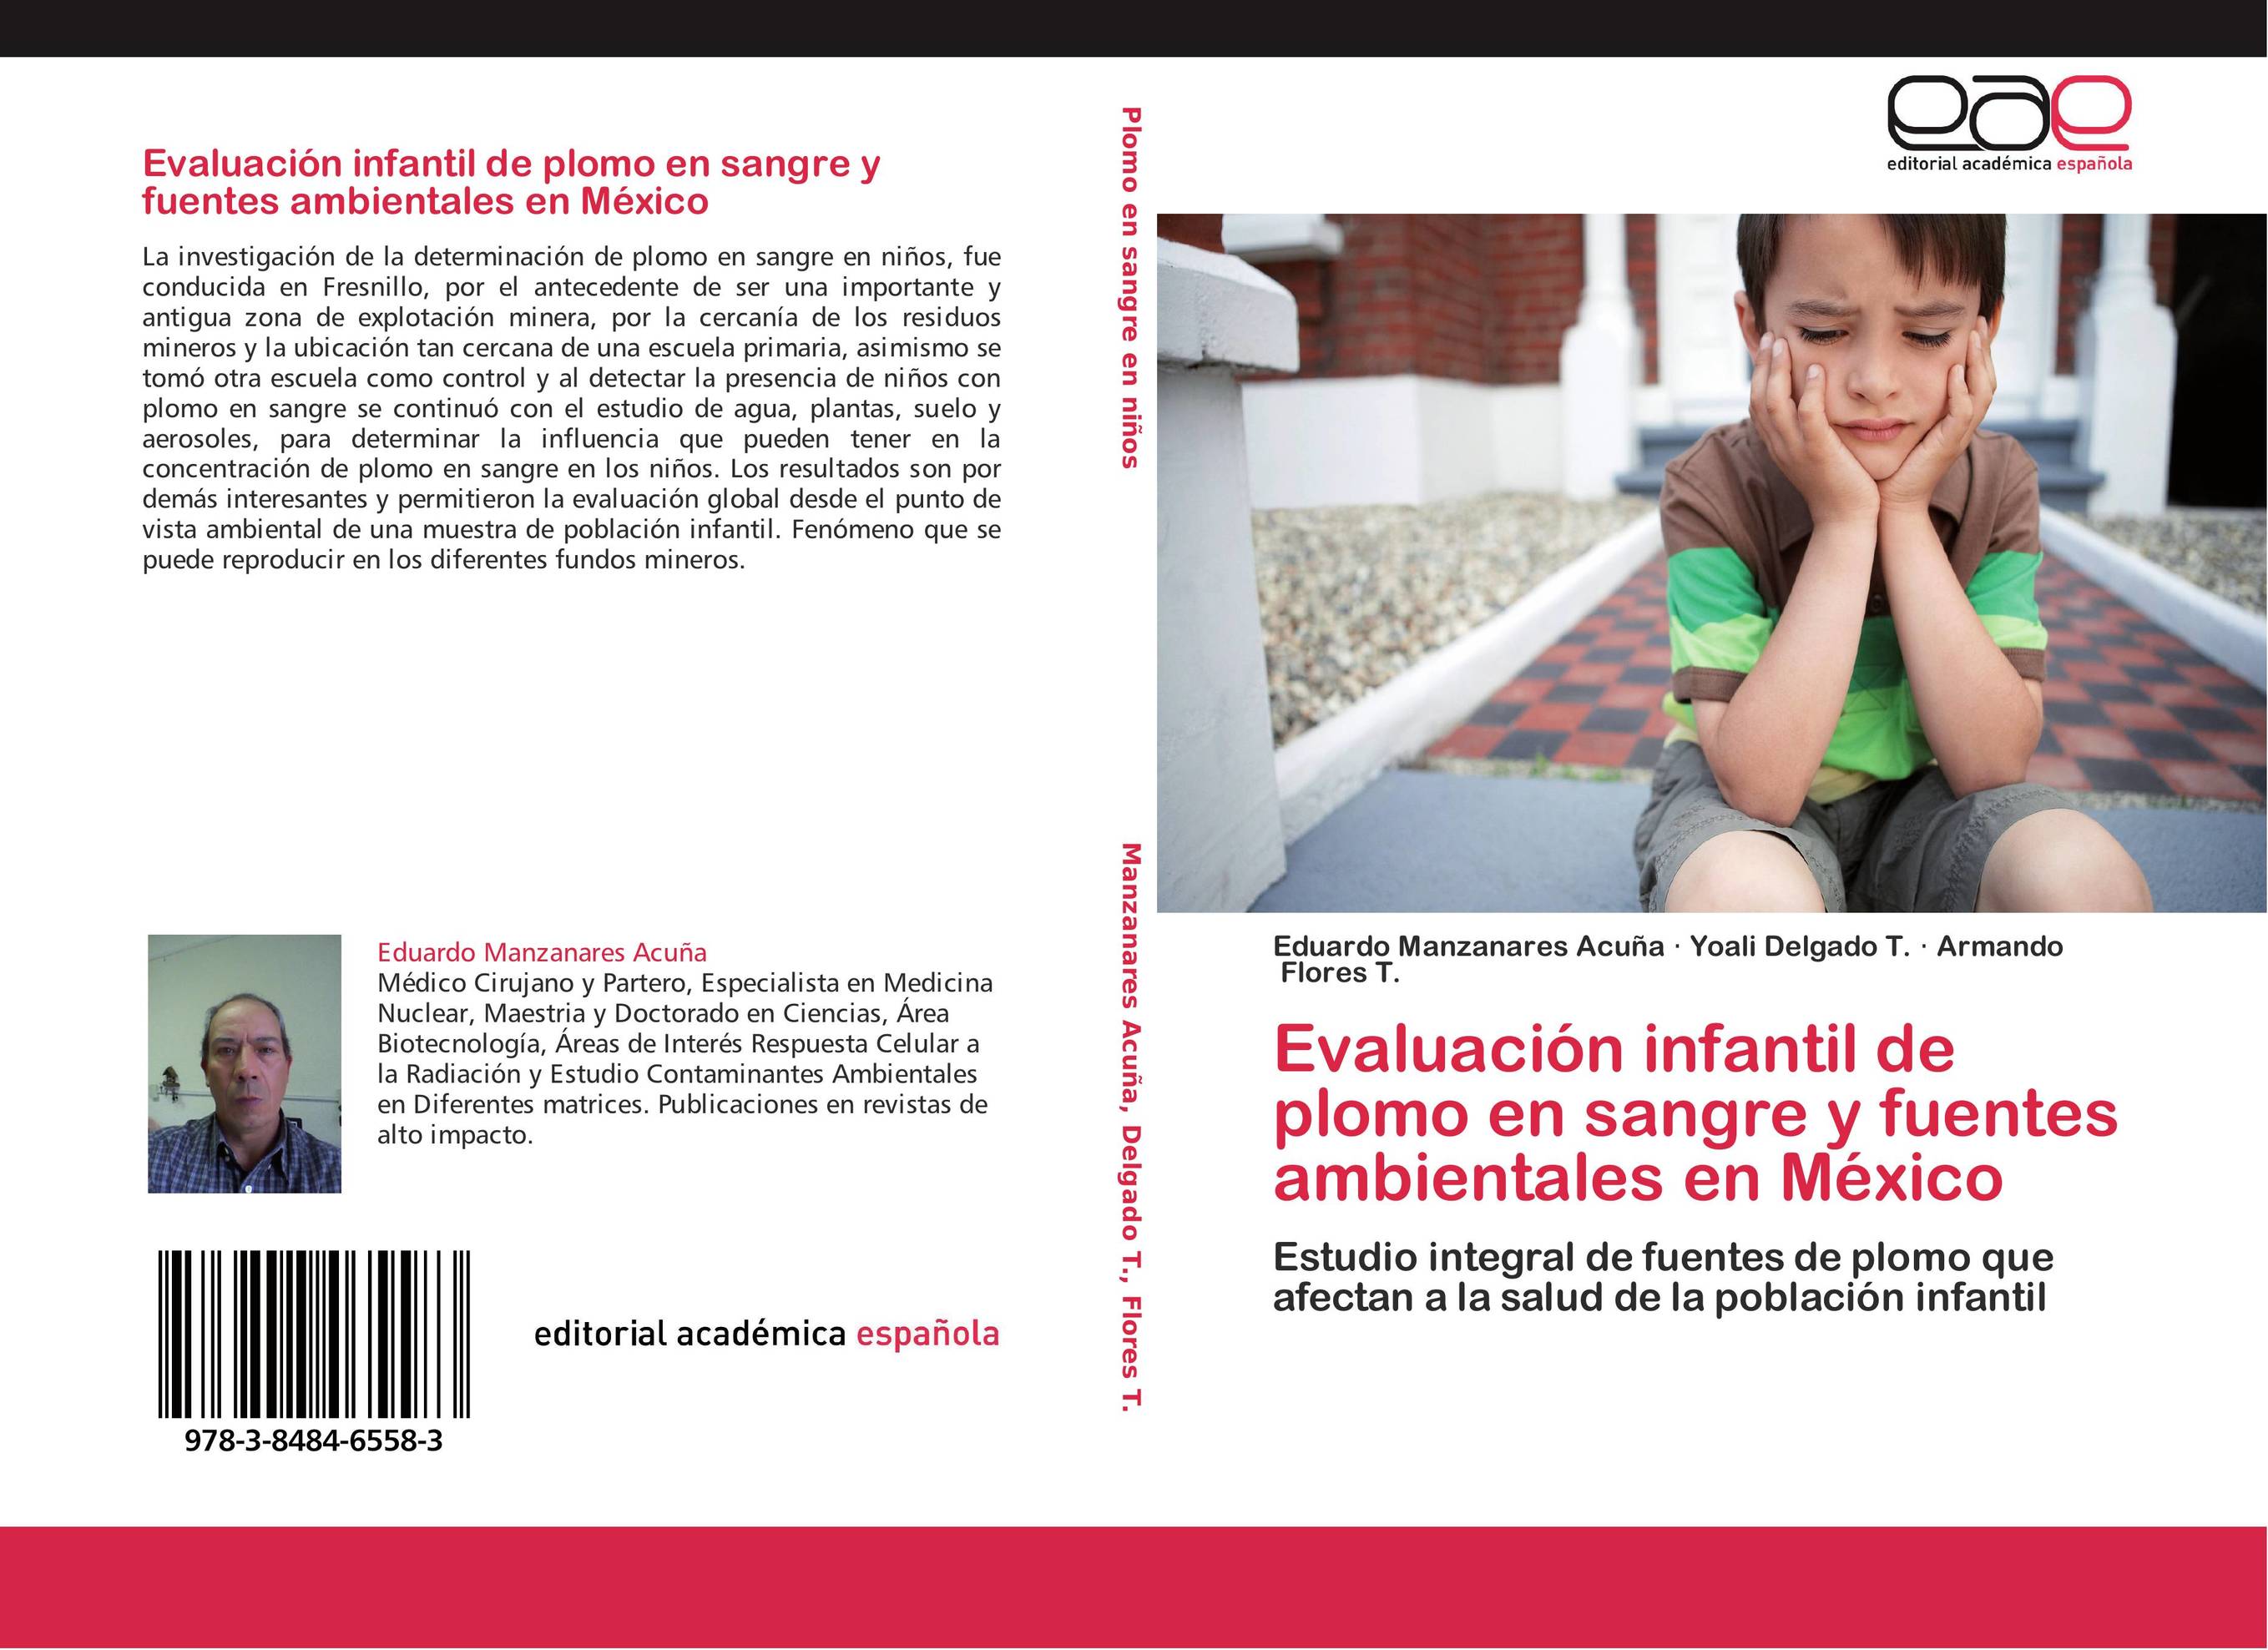 Evaluación infantil de plomo en sangre y fuentes ambientales en México